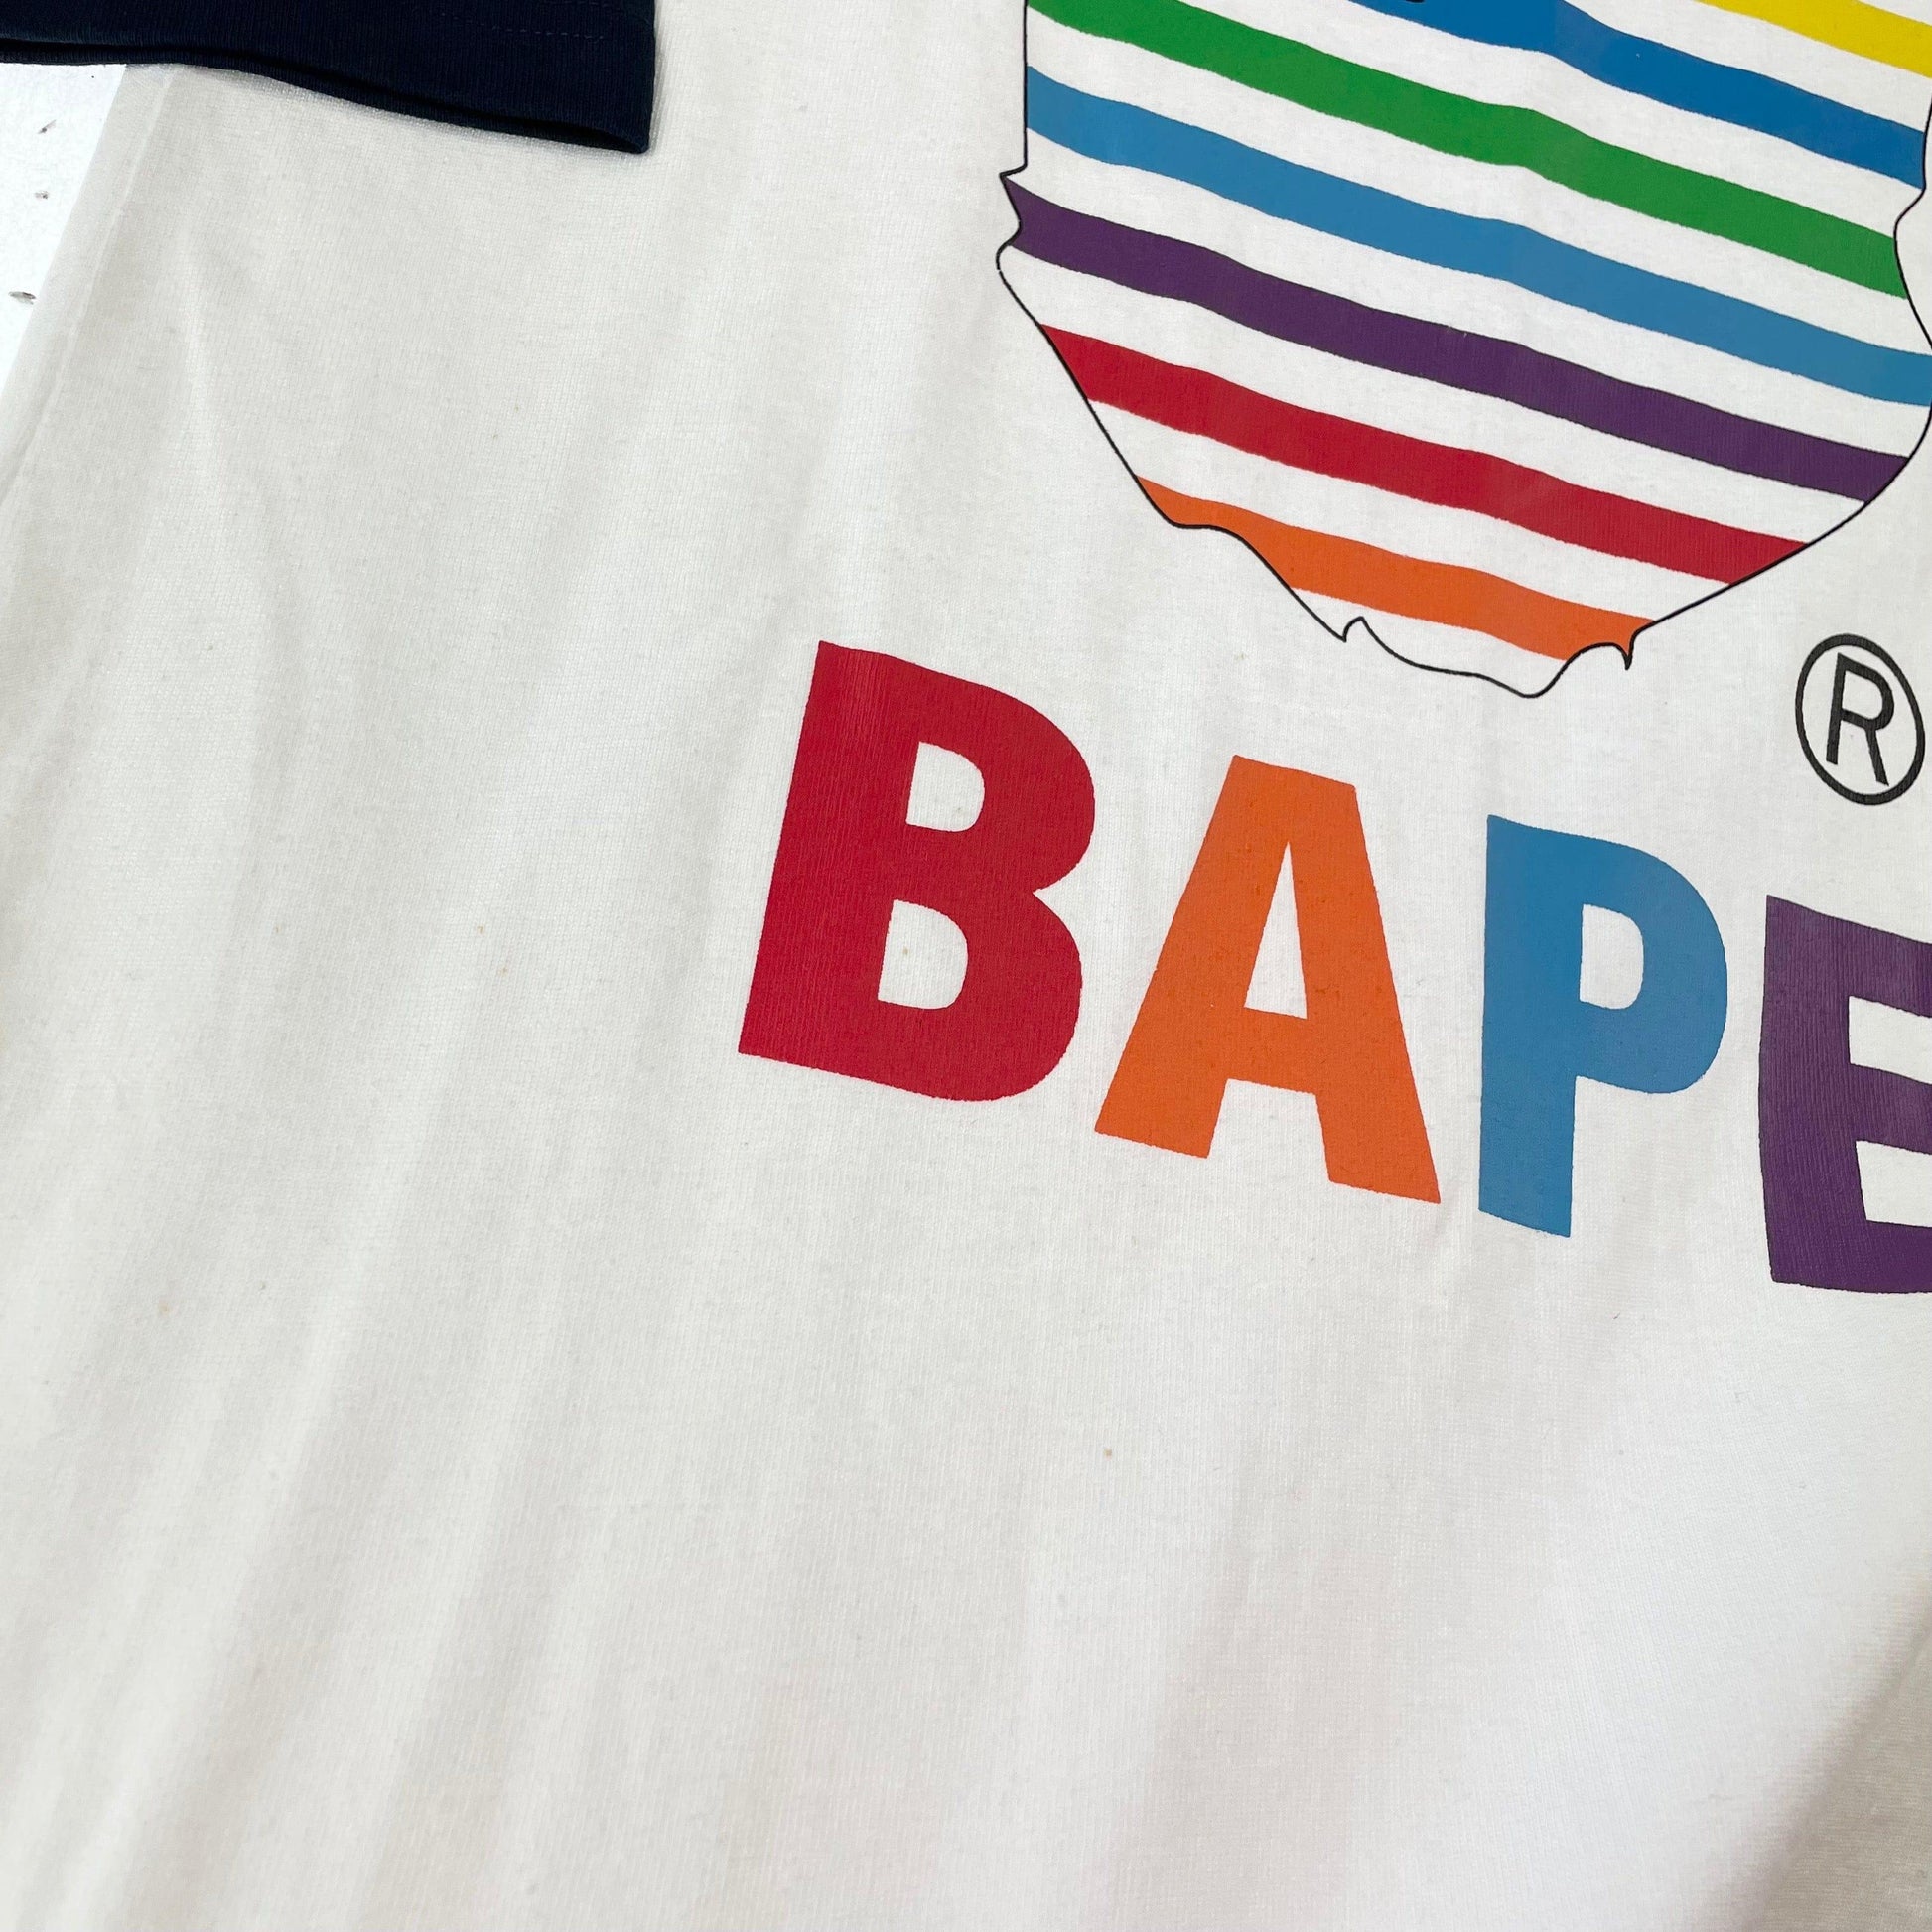 Bape logo t shirt women’s size XS - Known Source